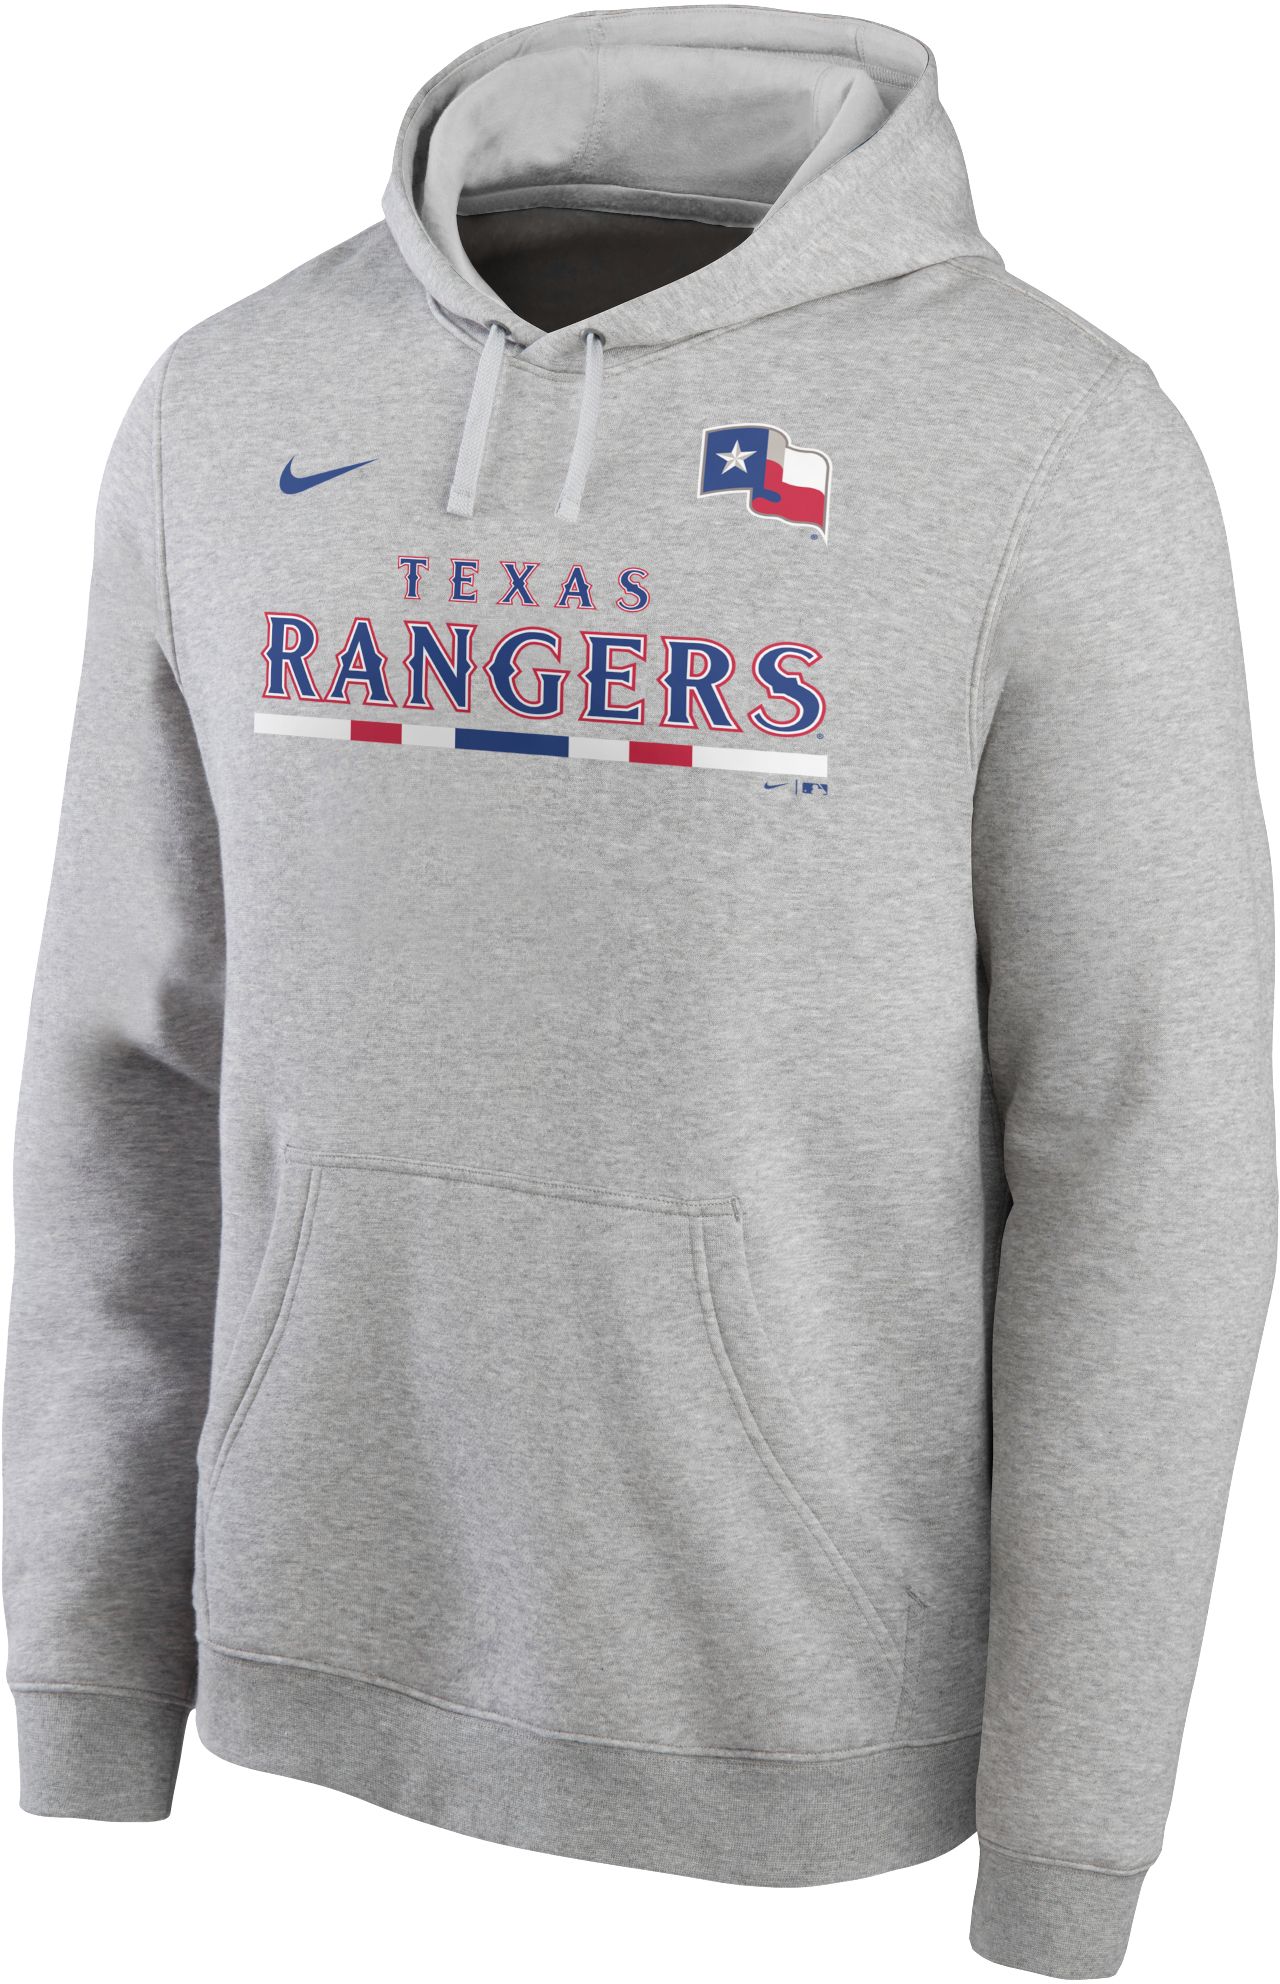 texas rangers hoodies cheap